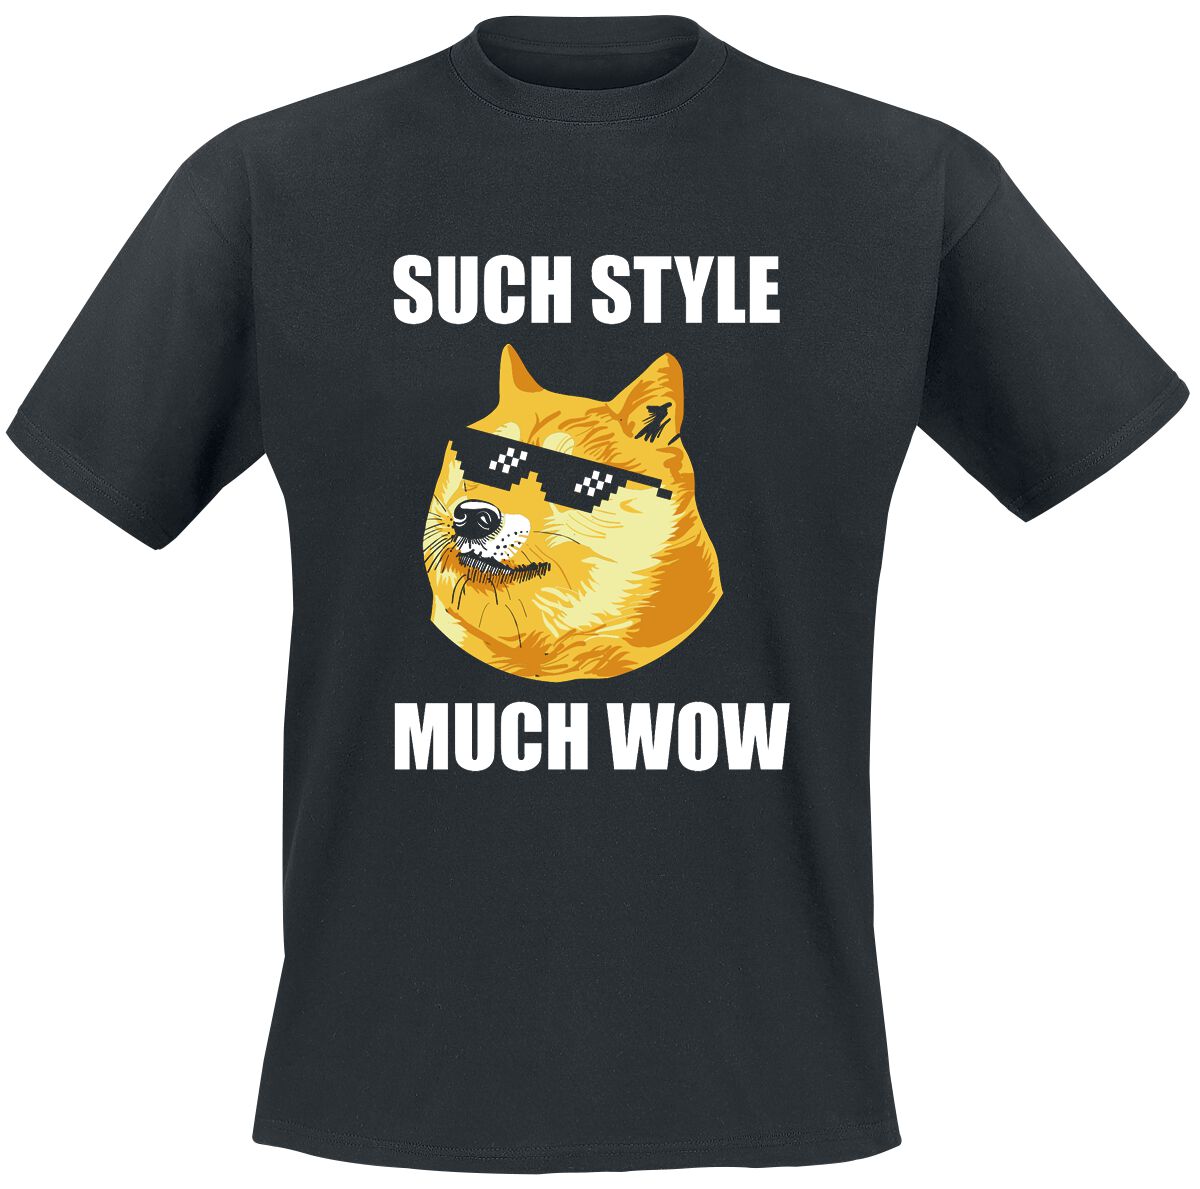 Tierisch T-Shirt - Such Style Much Wow - S bis 5XL - für Männer - Größe 3XL - schwarz